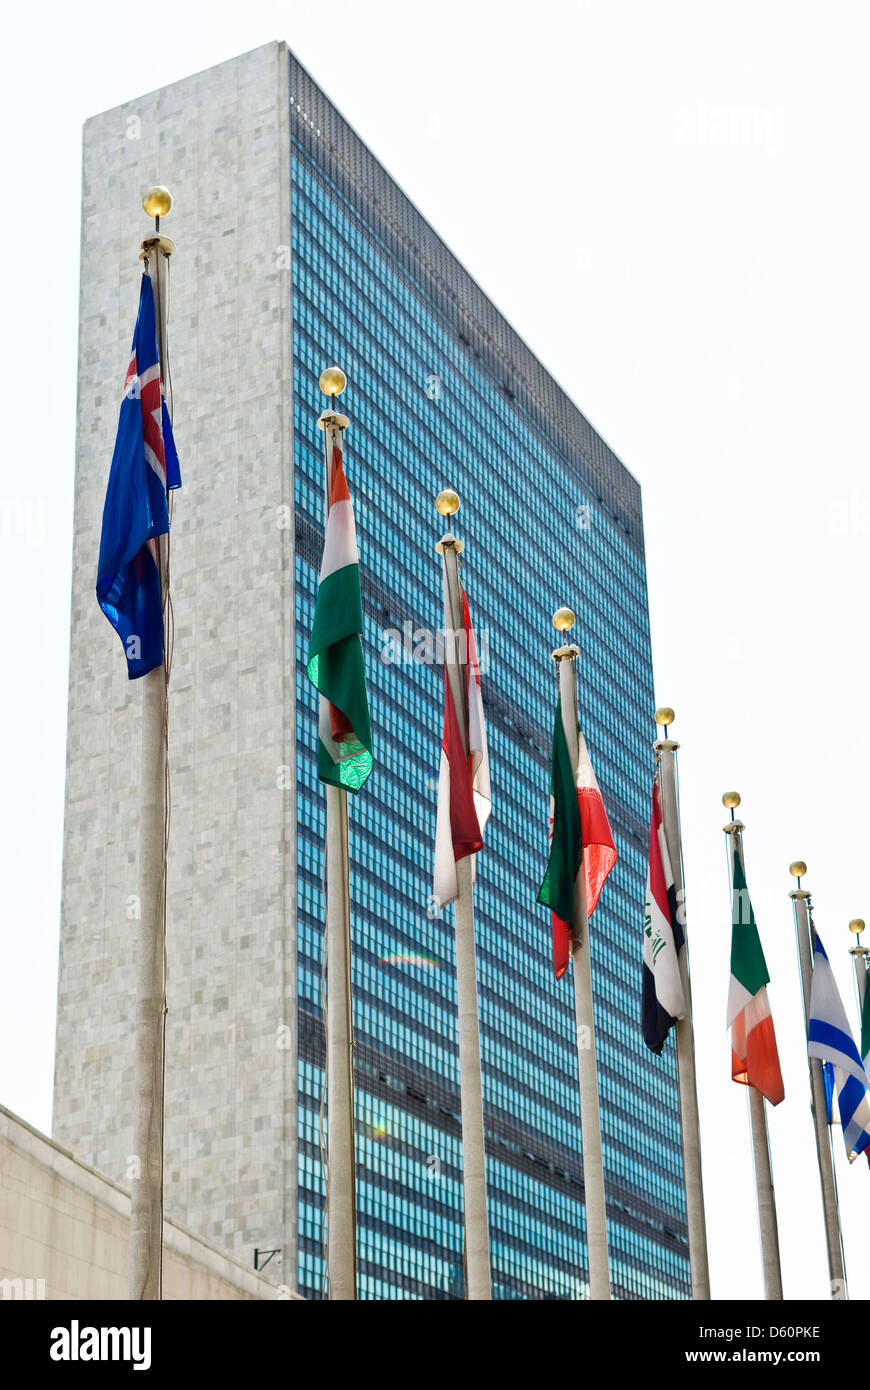 Palazzo delle Nazioni Unite, la sede delle Nazioni Unite, Manhattan, New  York City, NYC, New York, Stati Uniti d'America - immagine presa dal suolo  pubblico Foto stock - Alamy